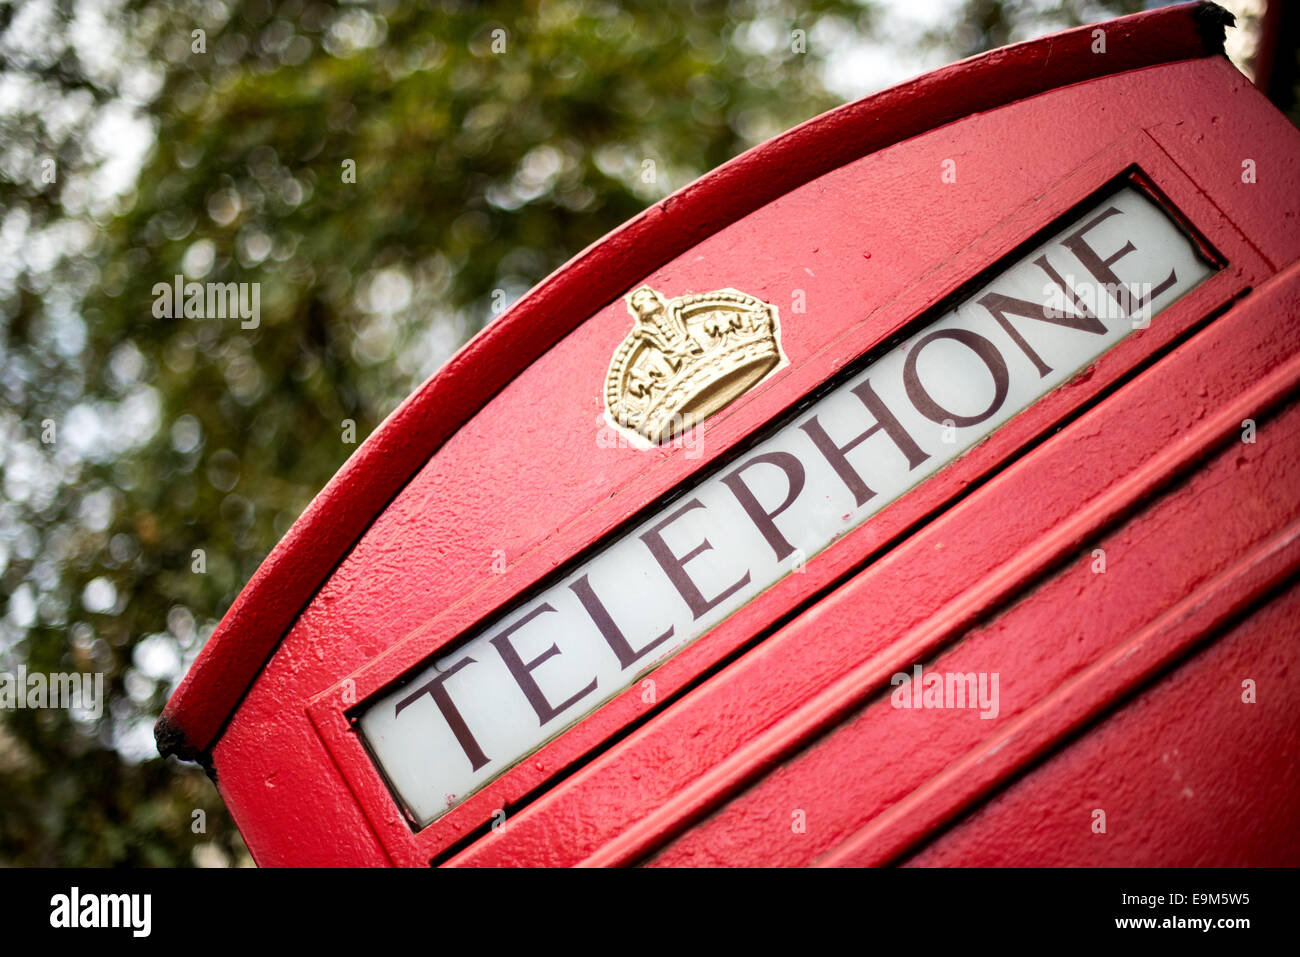 LONDON, Regno Unito - Il telefono rosso box è diventata una icona simbolo della Gran Bretagna. Nonostante il calo della domanda per i telefoni pubblici a pagamento, molte delle scatole può ancora essere visto in tutto il Regno Unito. Foto Stock